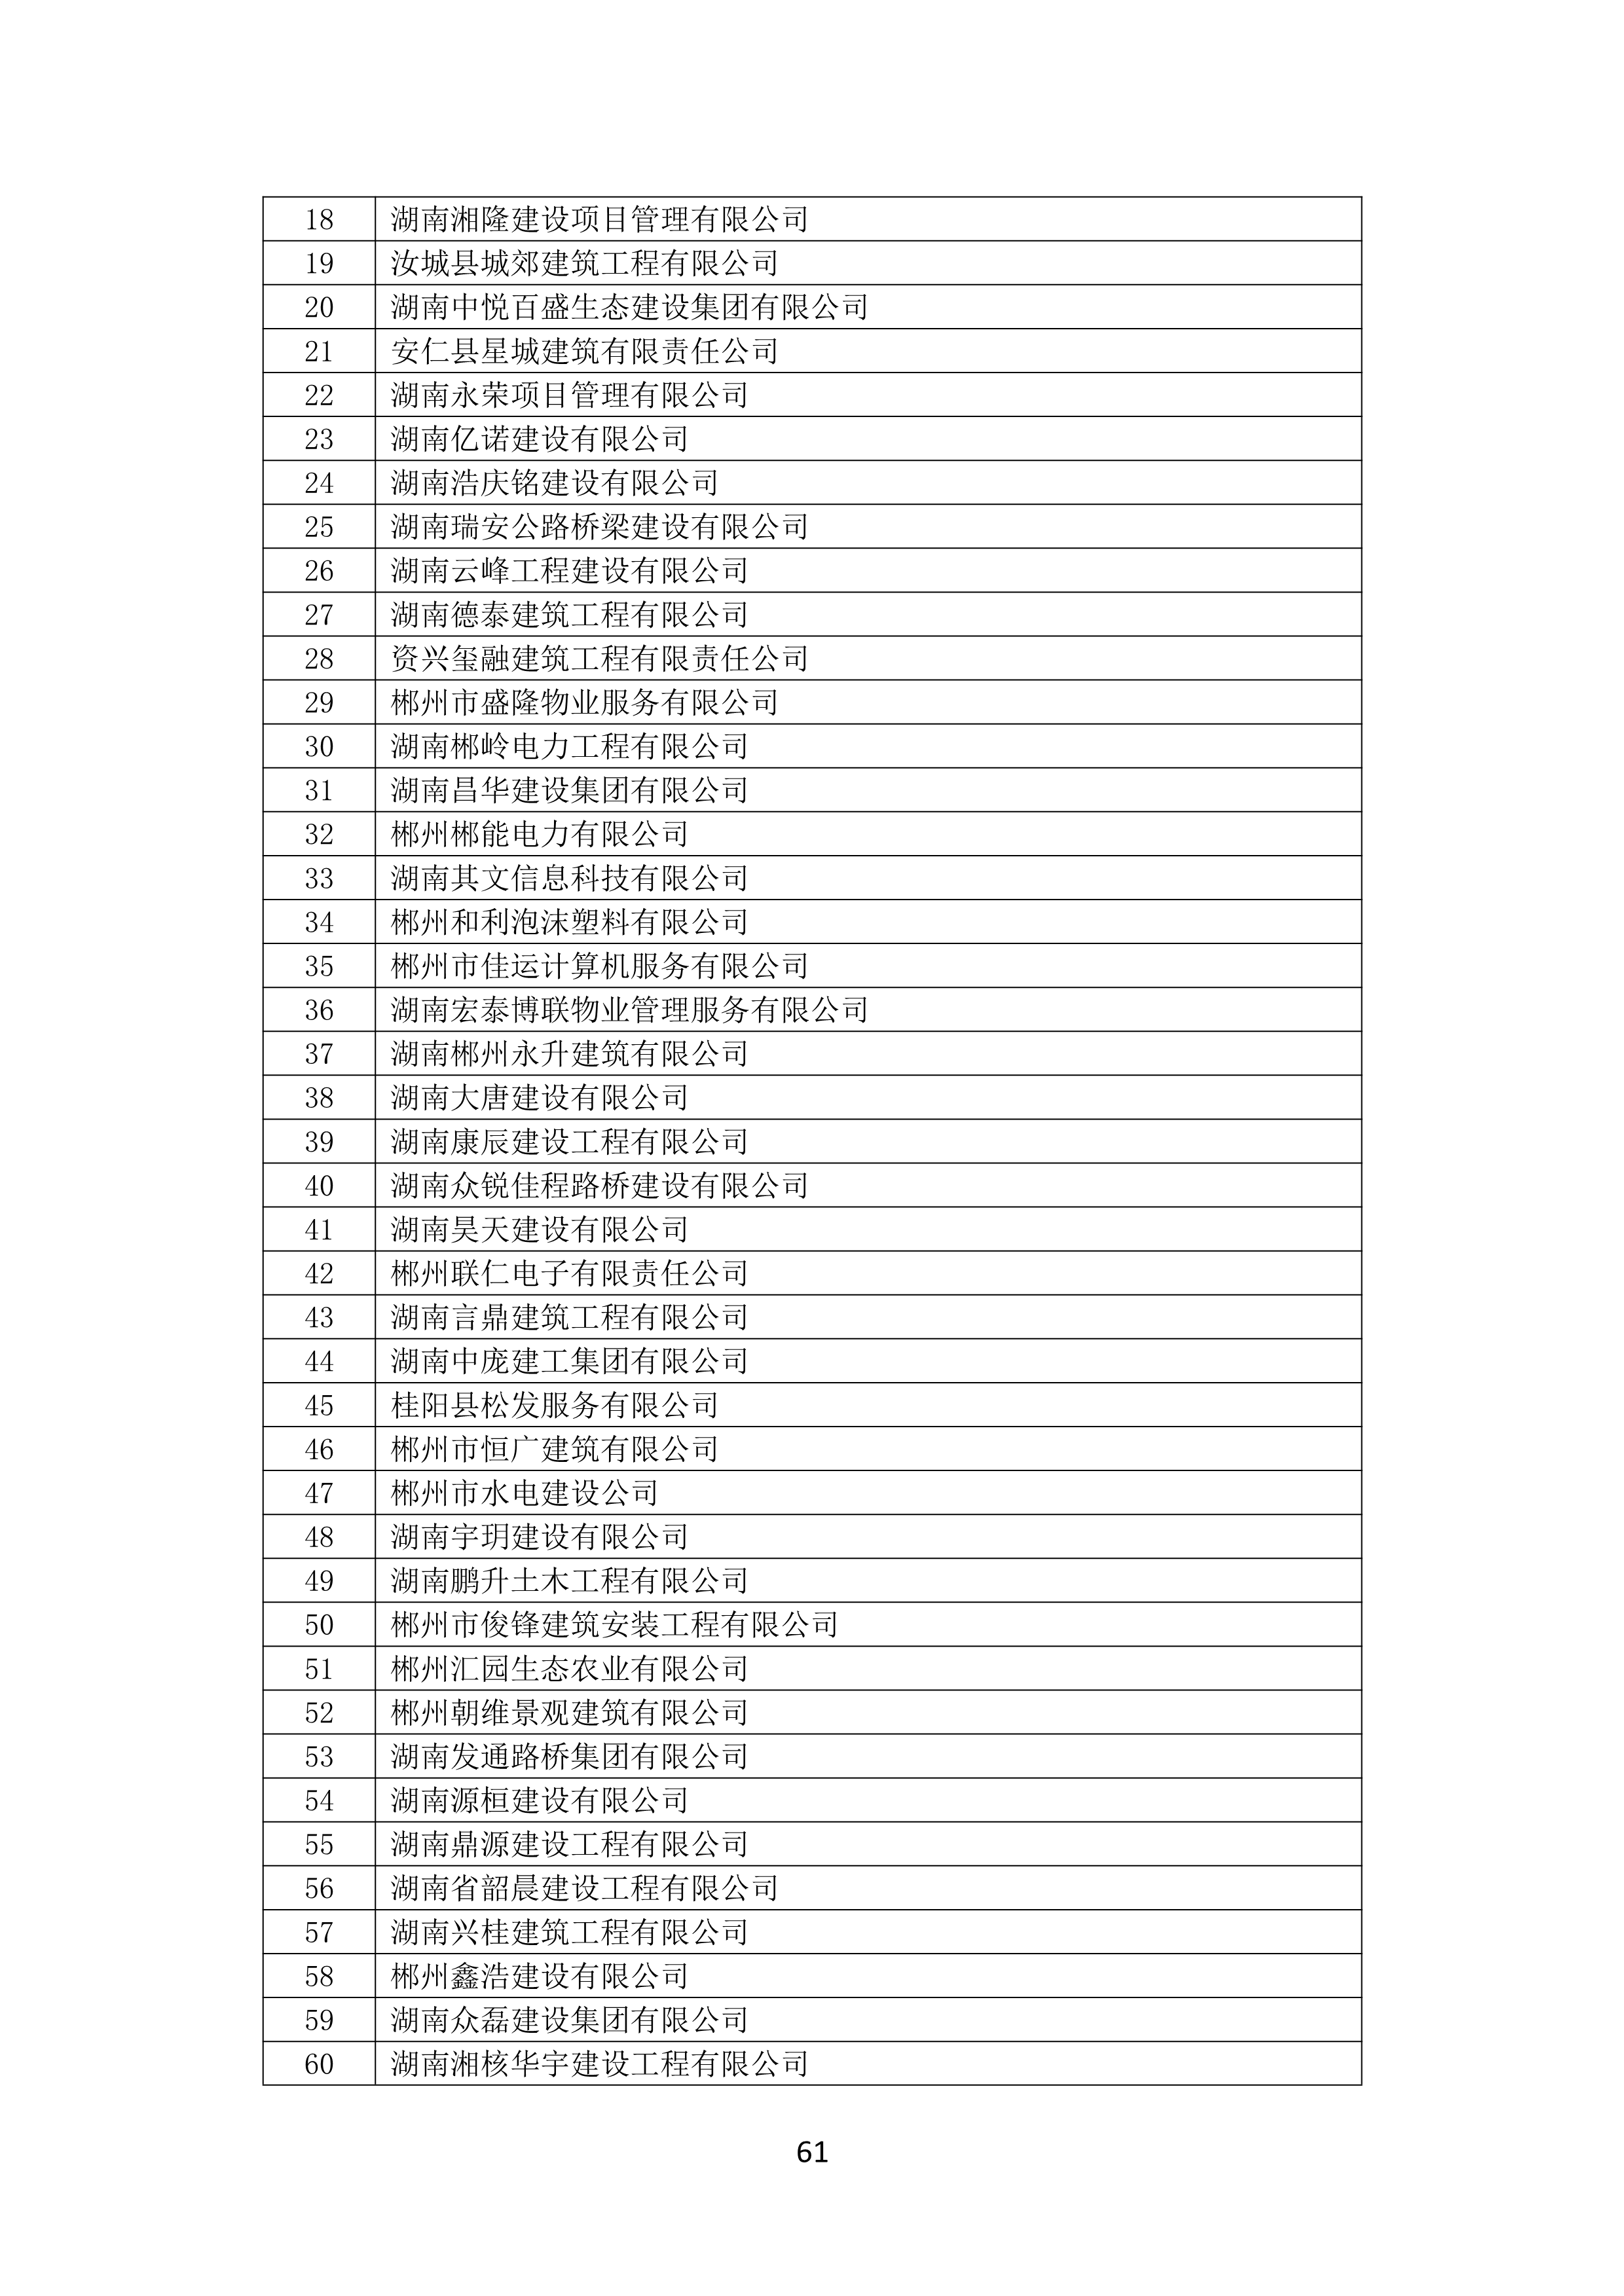 2021 年(nián)度湖南省守合同重信用企業名單_62.png